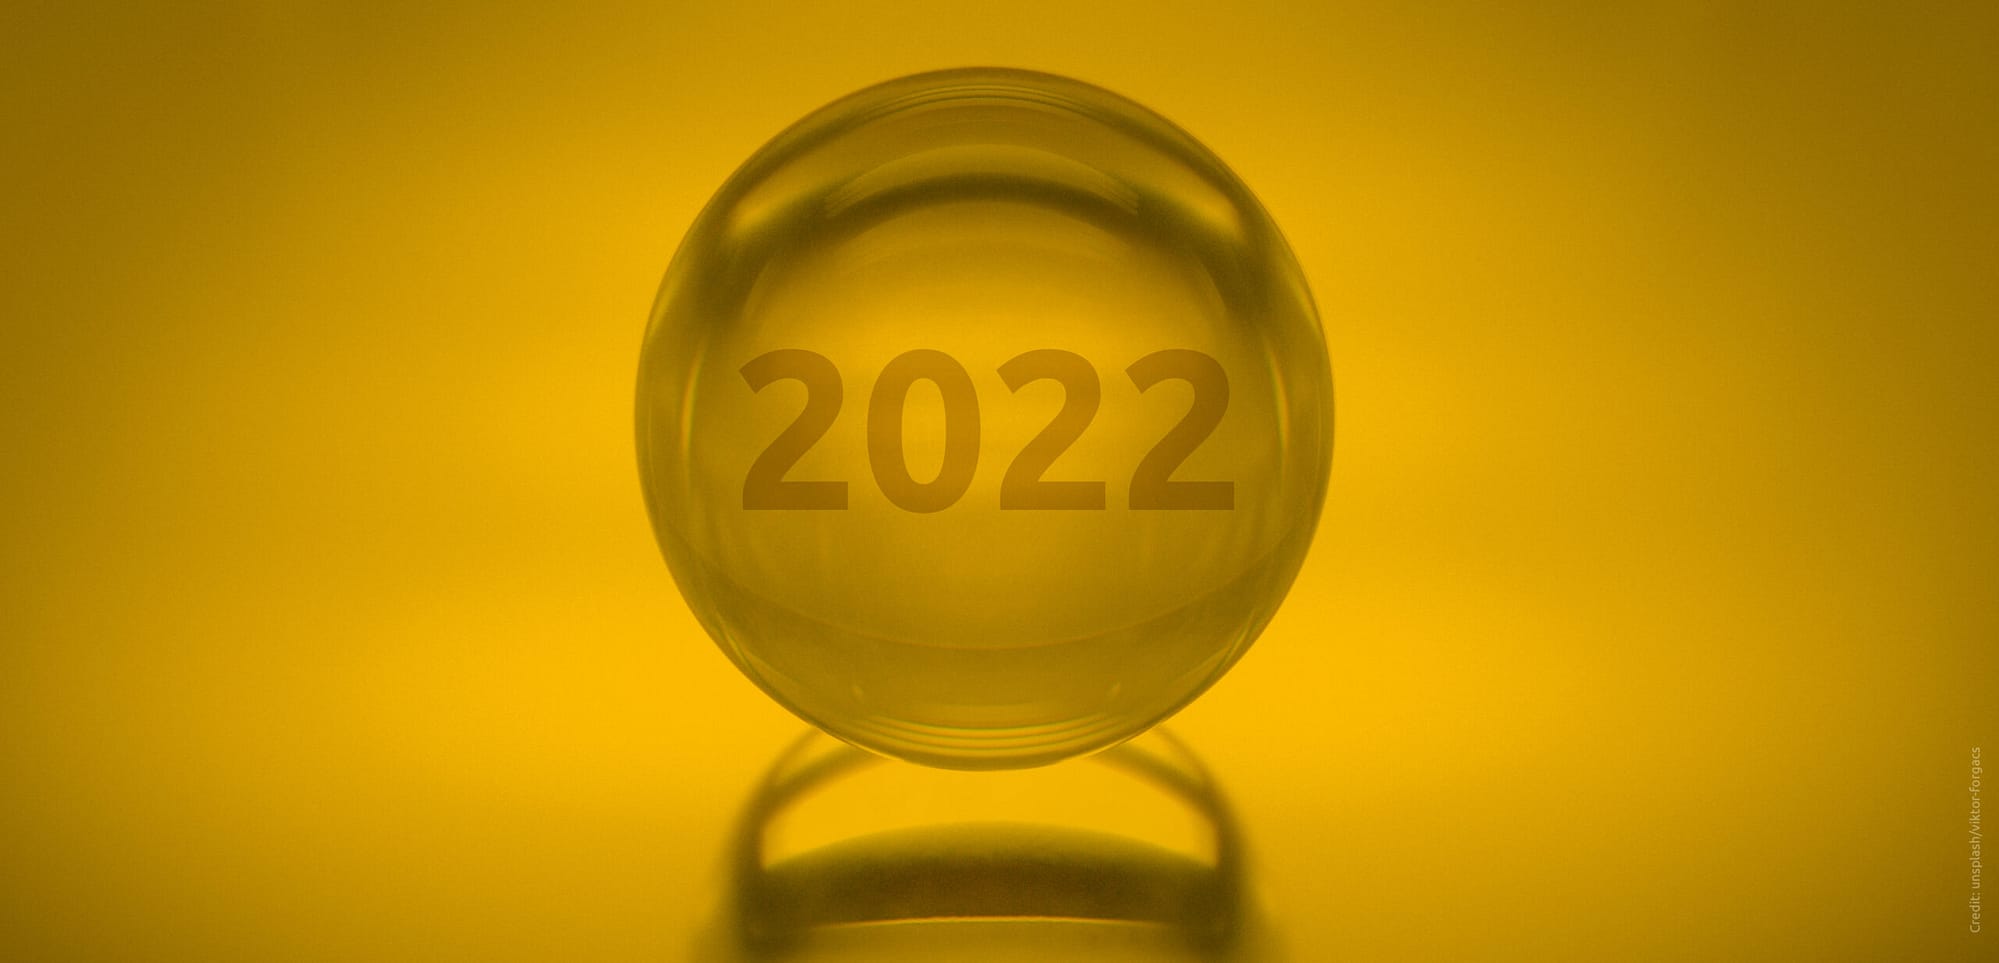 E-Commerce Trends 2022